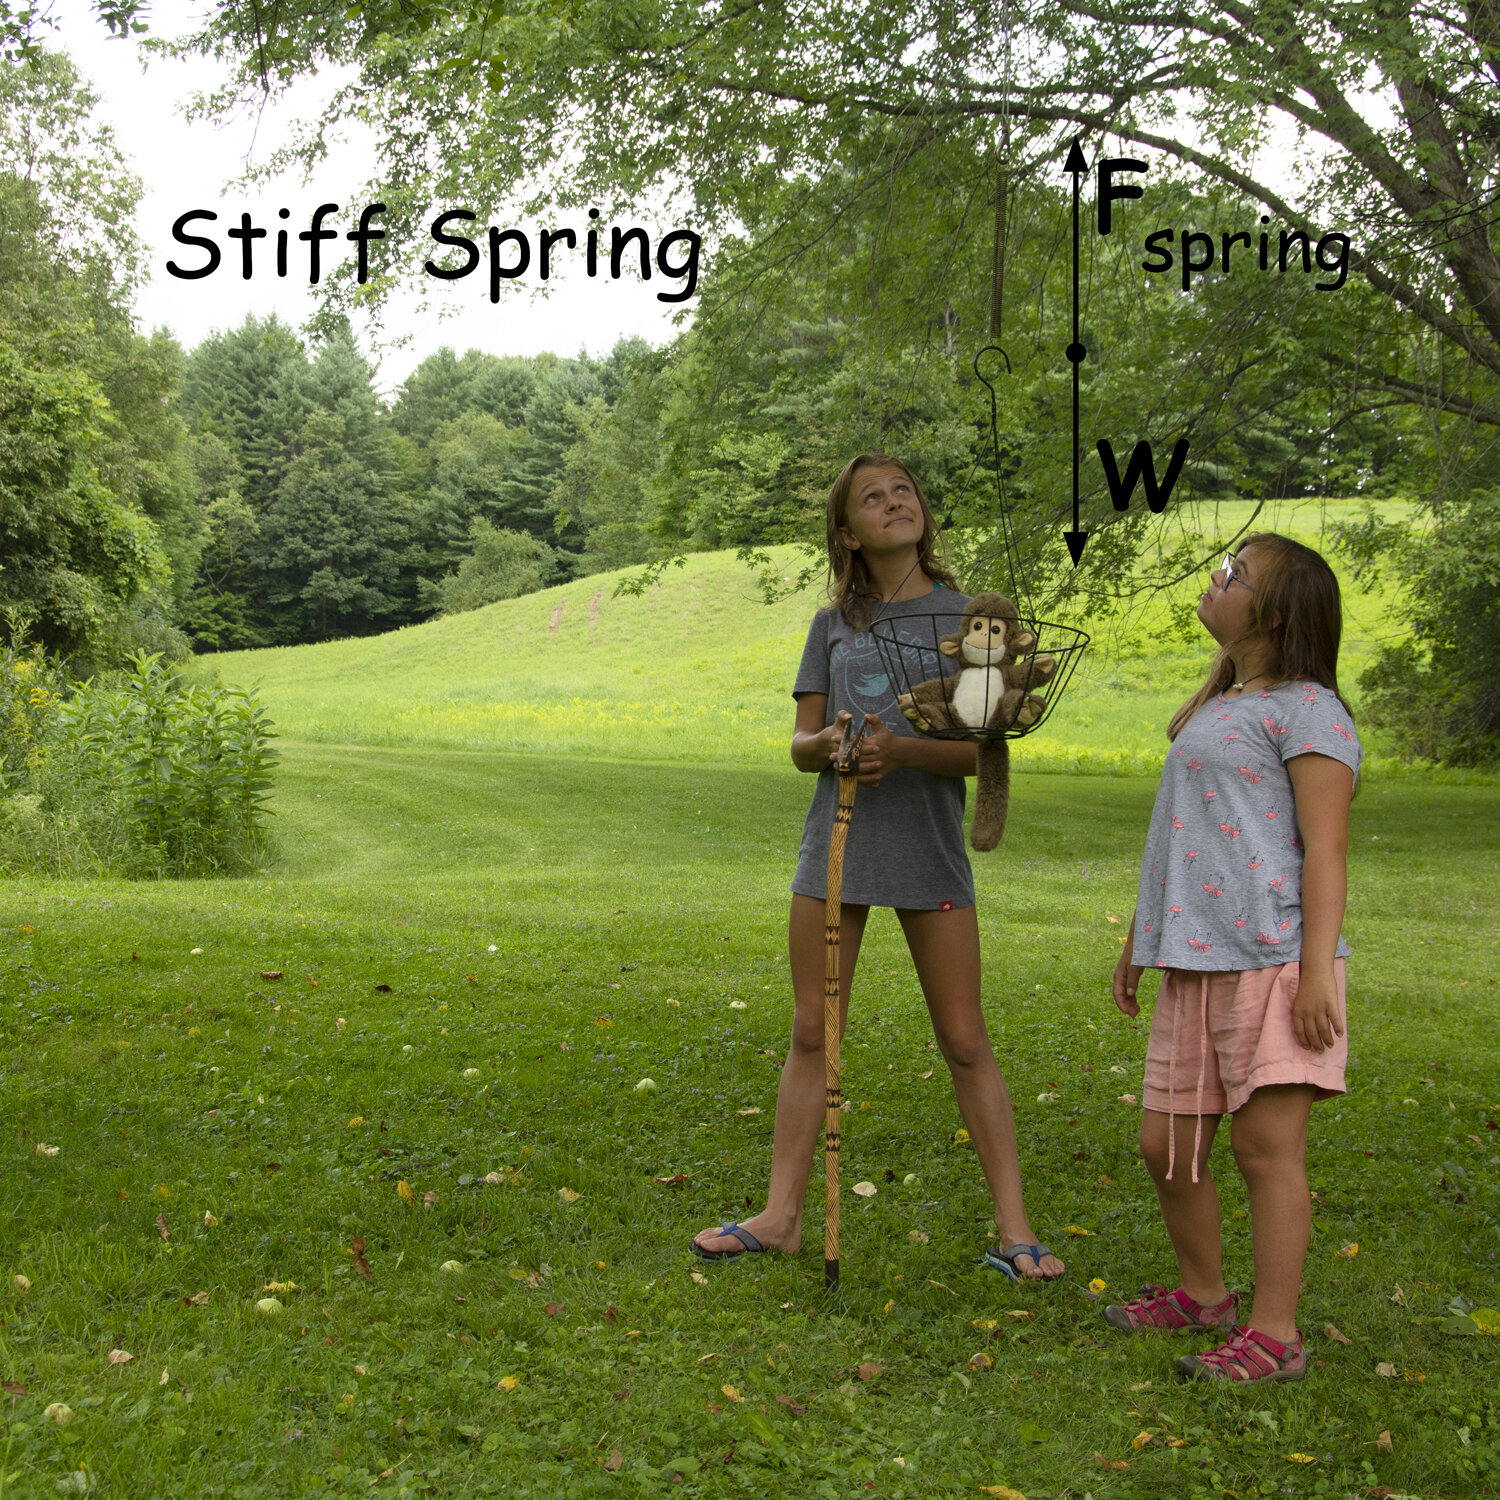 Stiff_Spring_746_1500x1500.jpg